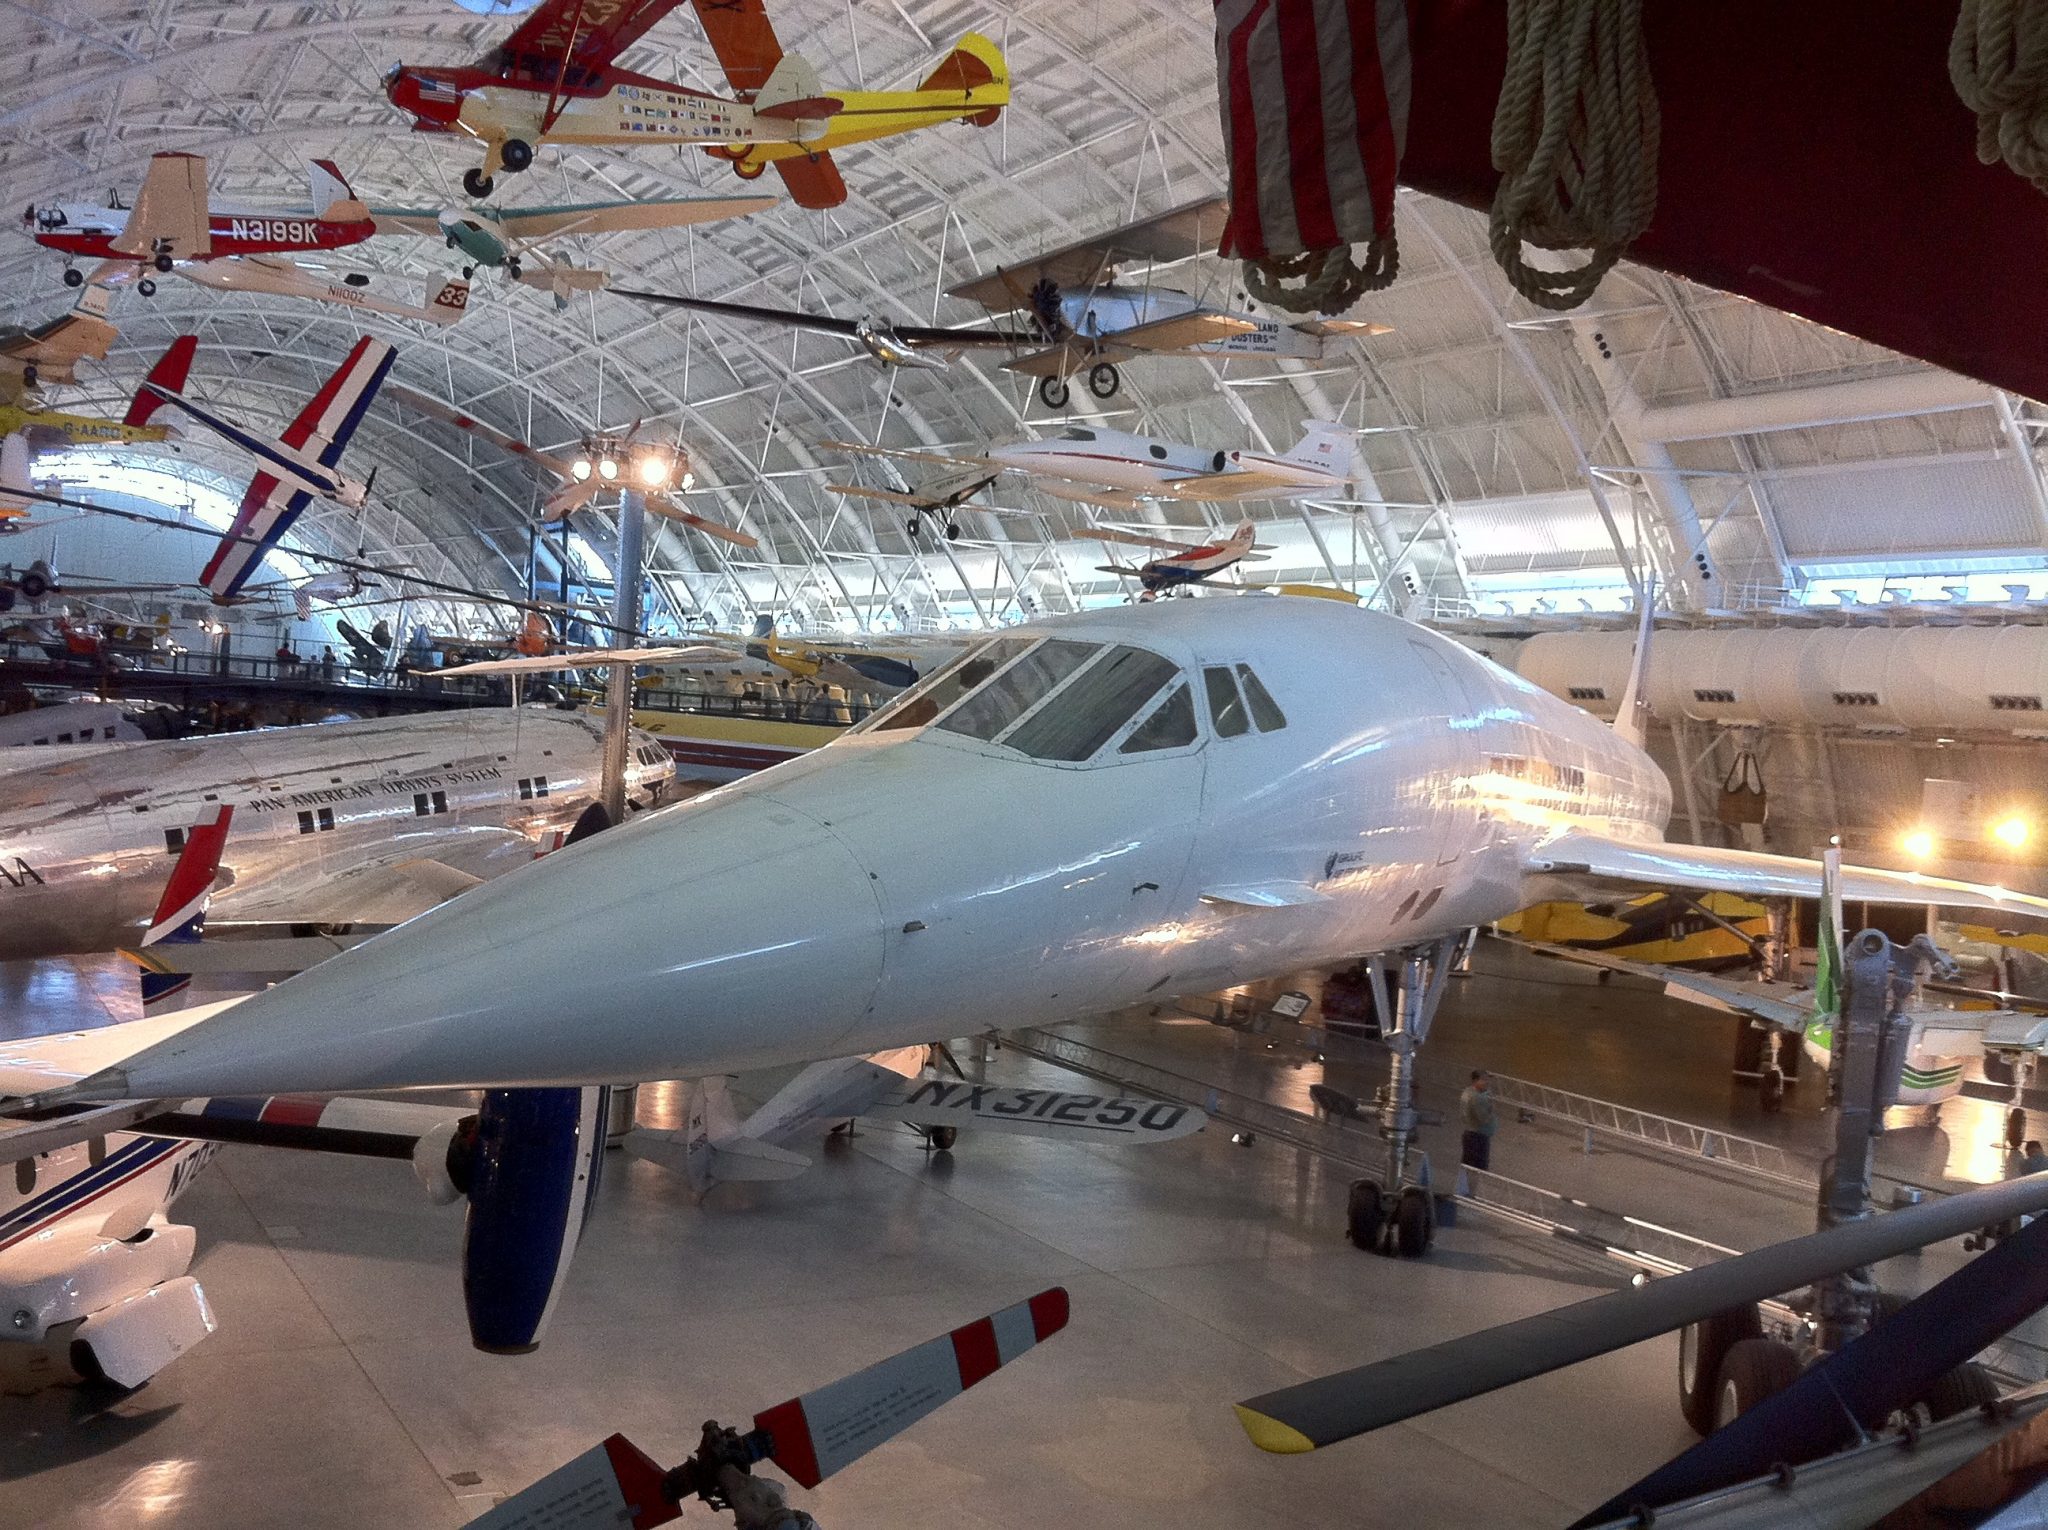 Concorde!